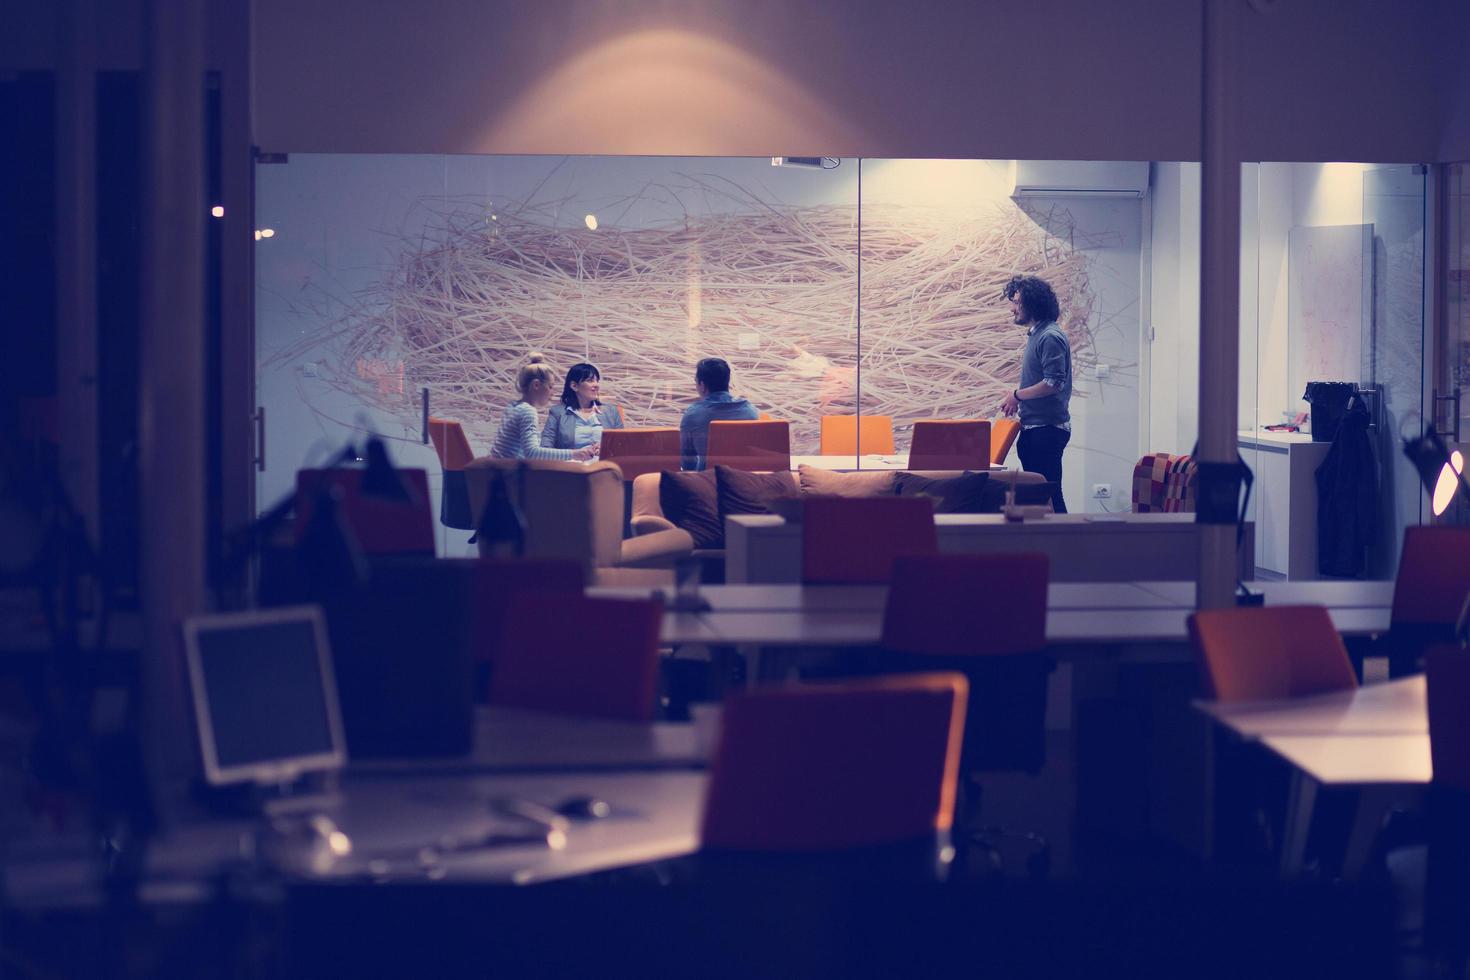 zakelijk team tijdens een vergadering in een modern kantoorgebouw foto